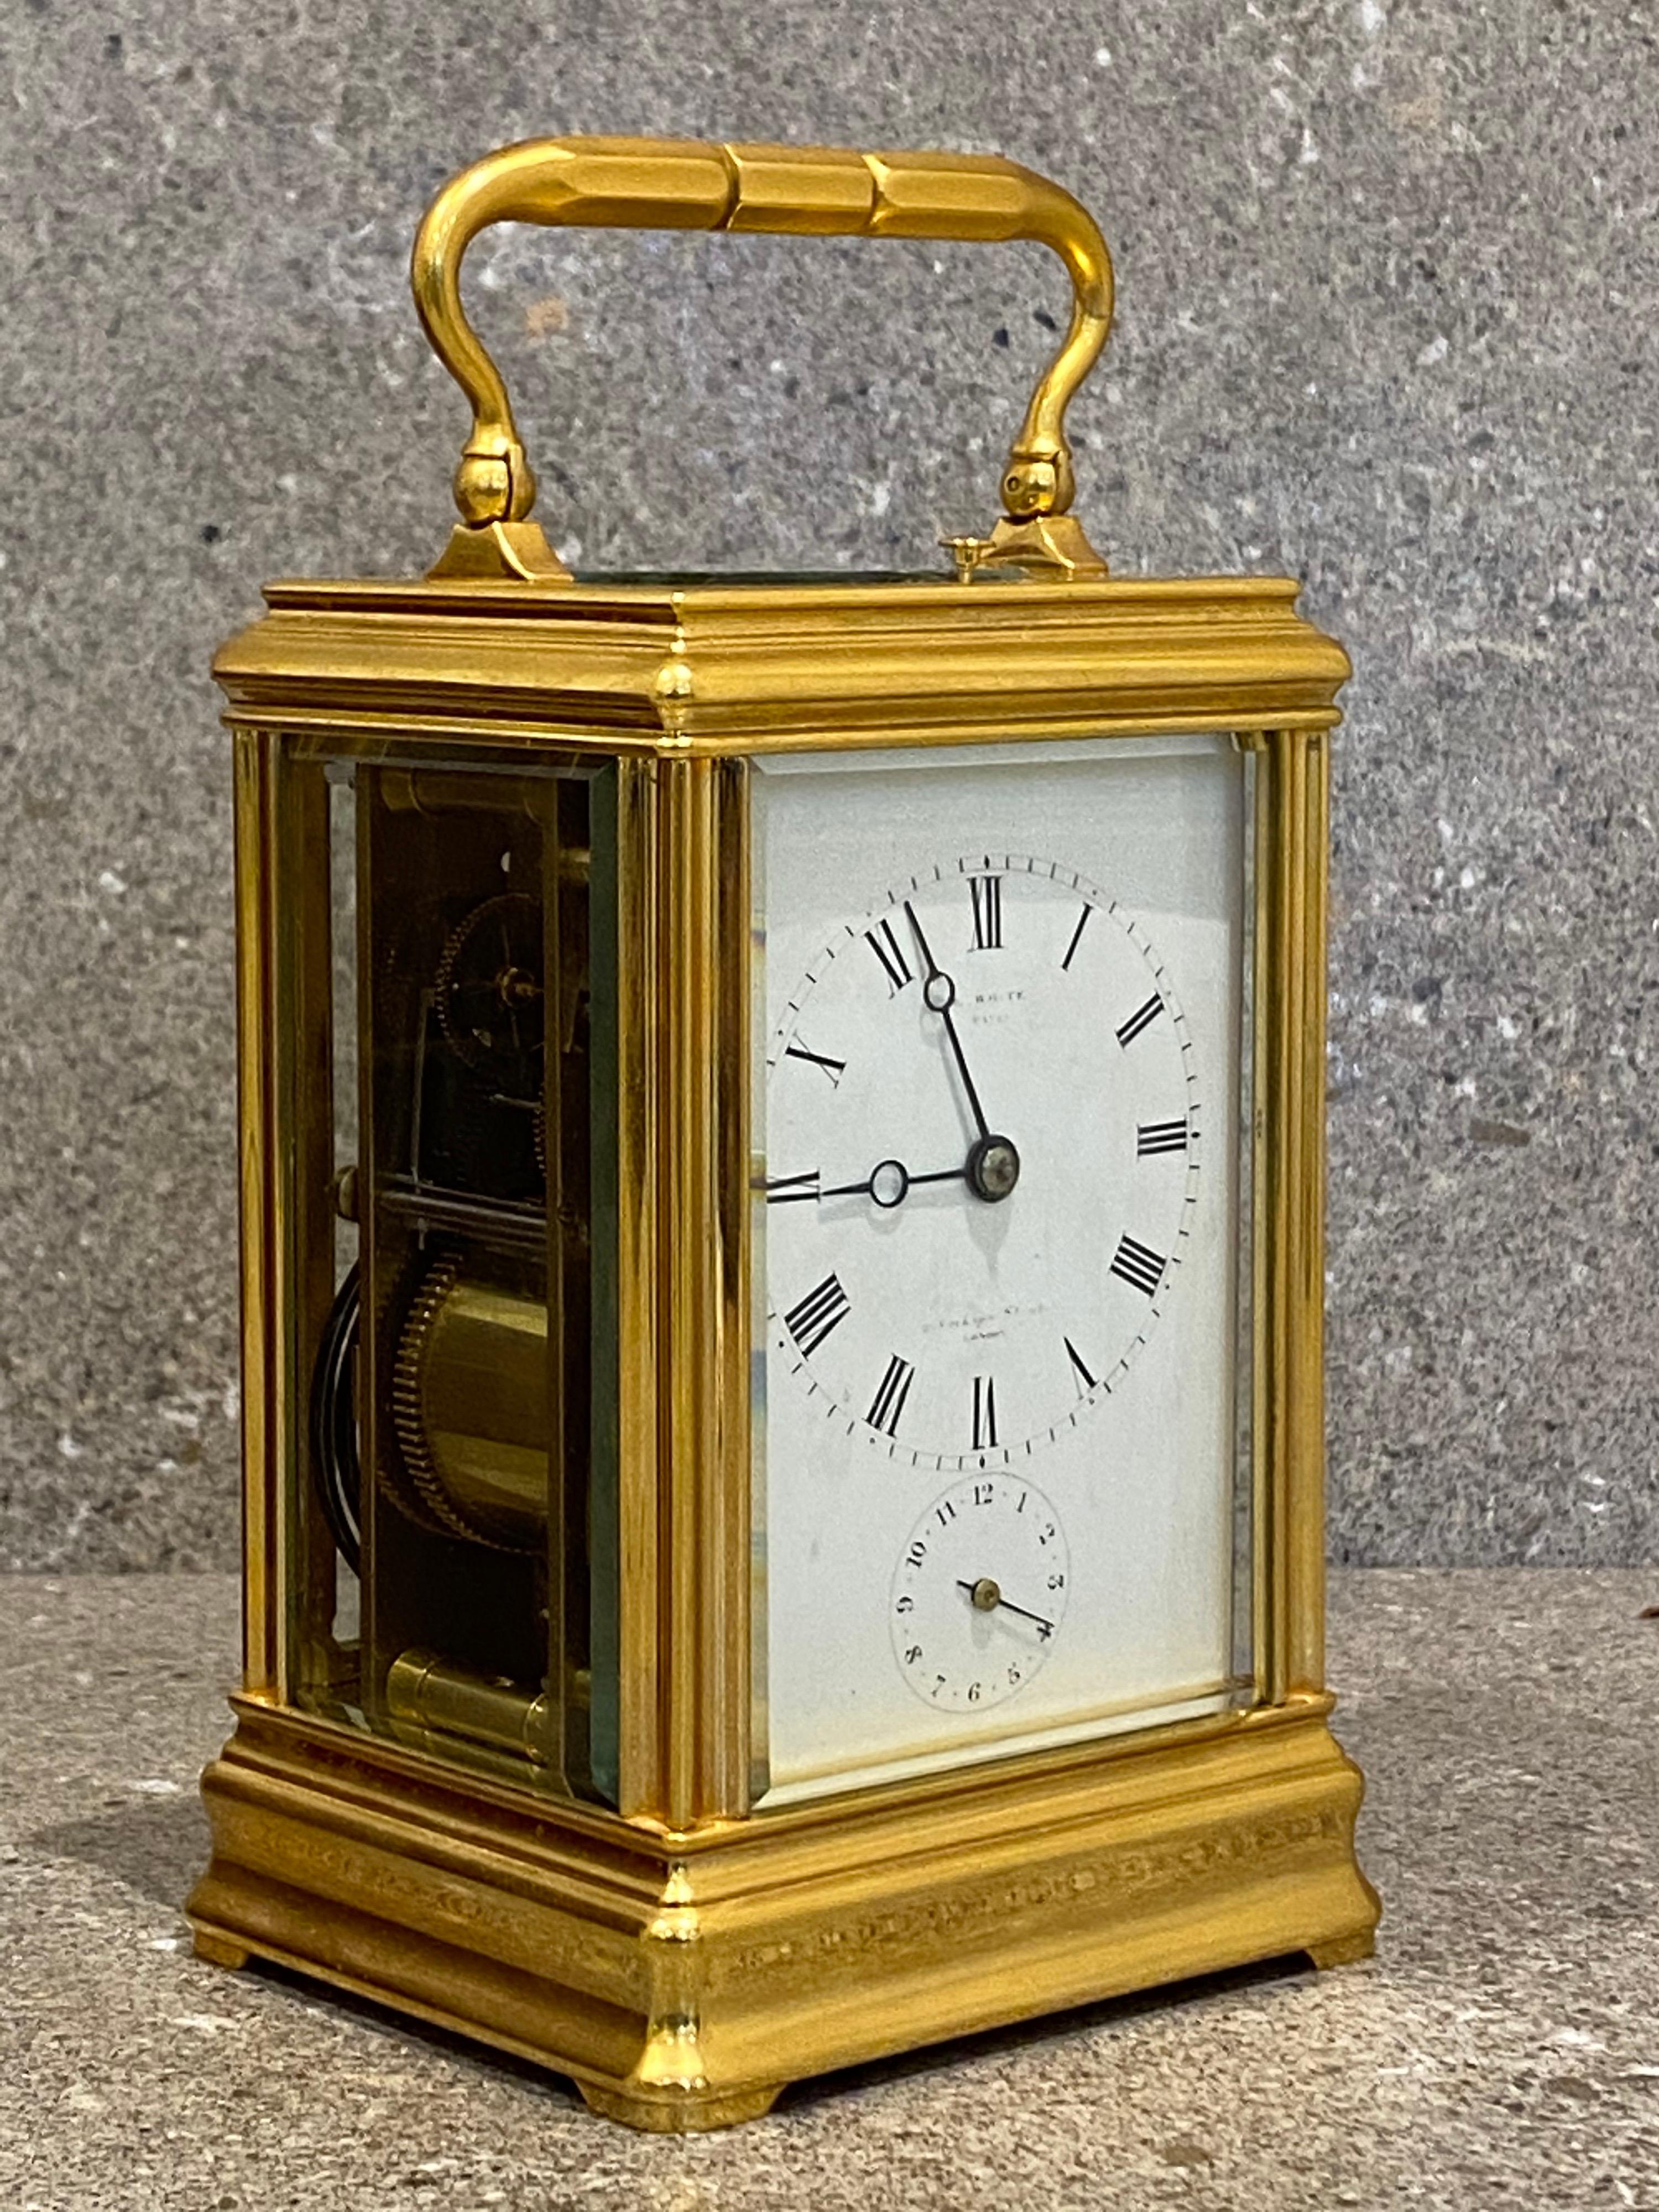 Cette horloge de style gorge a été fabriquée par Drocourt pour E. White vers 1870, à une époque où Edward White avait la réputation bien méritée de fabriquer et de vendre des horloges de première catégorie. Il a conservé son étui en cuir numéroté